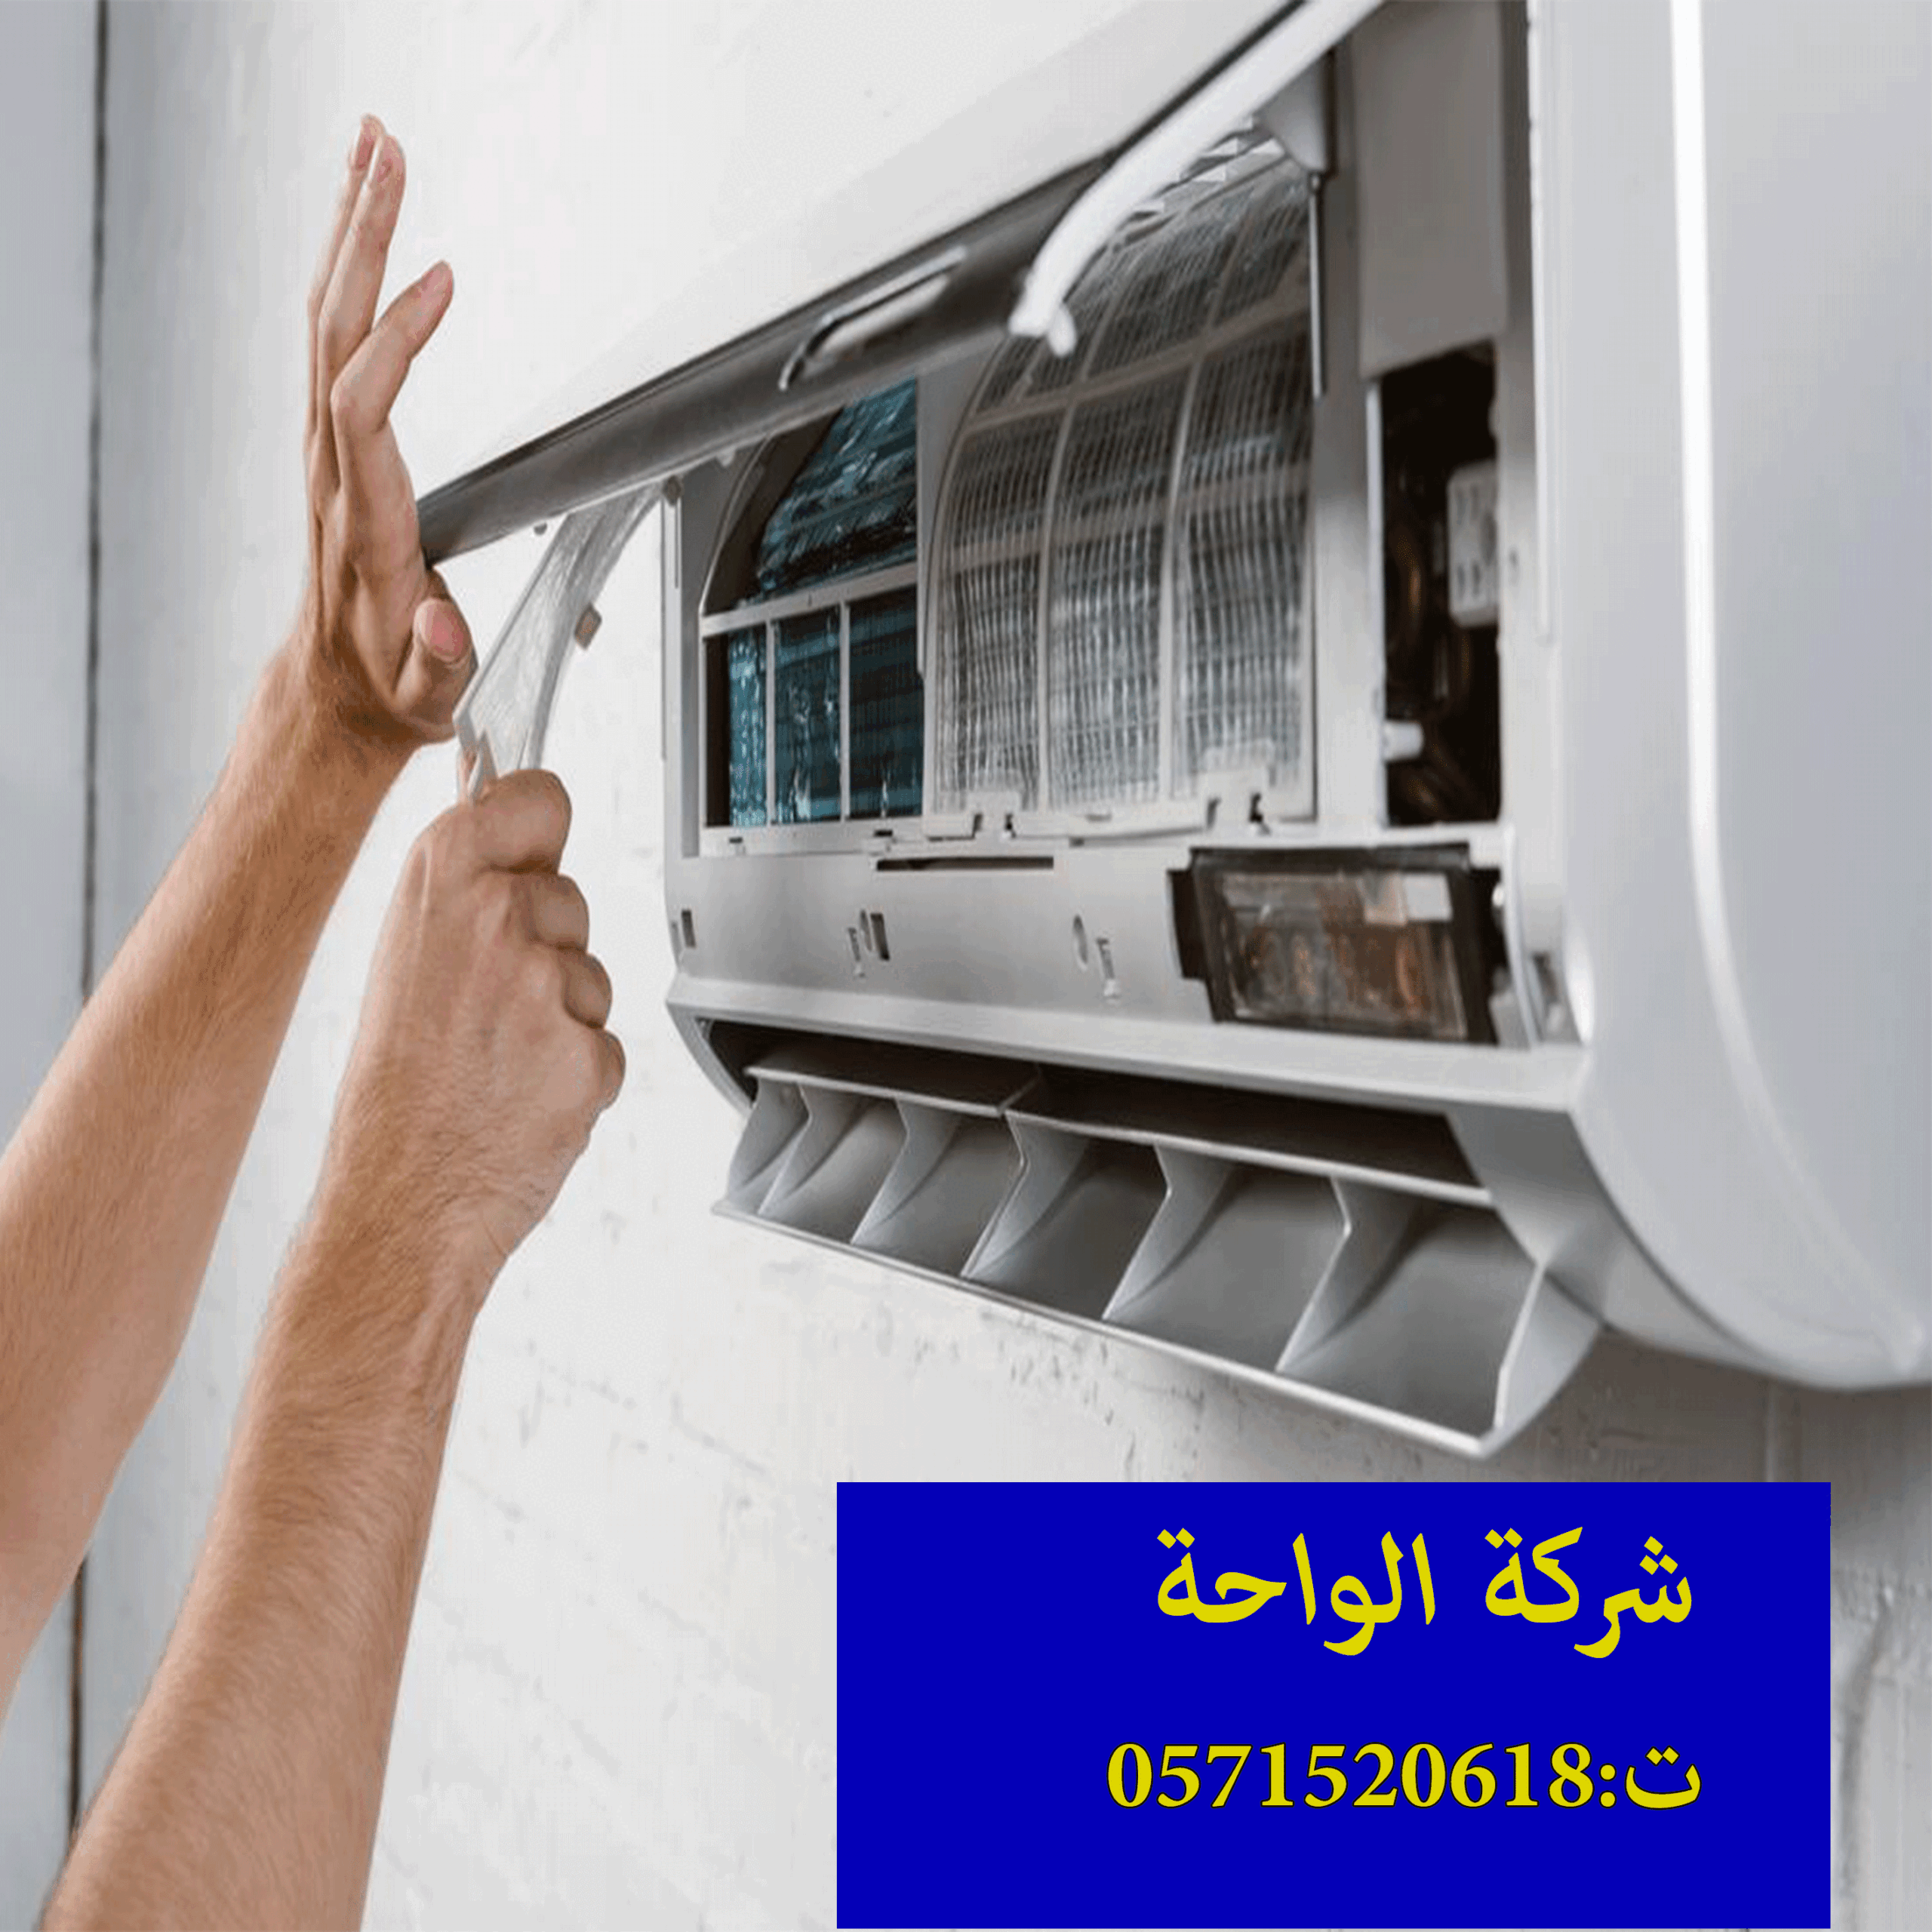 سعر الواح الفلين العازل بحي الياسمين